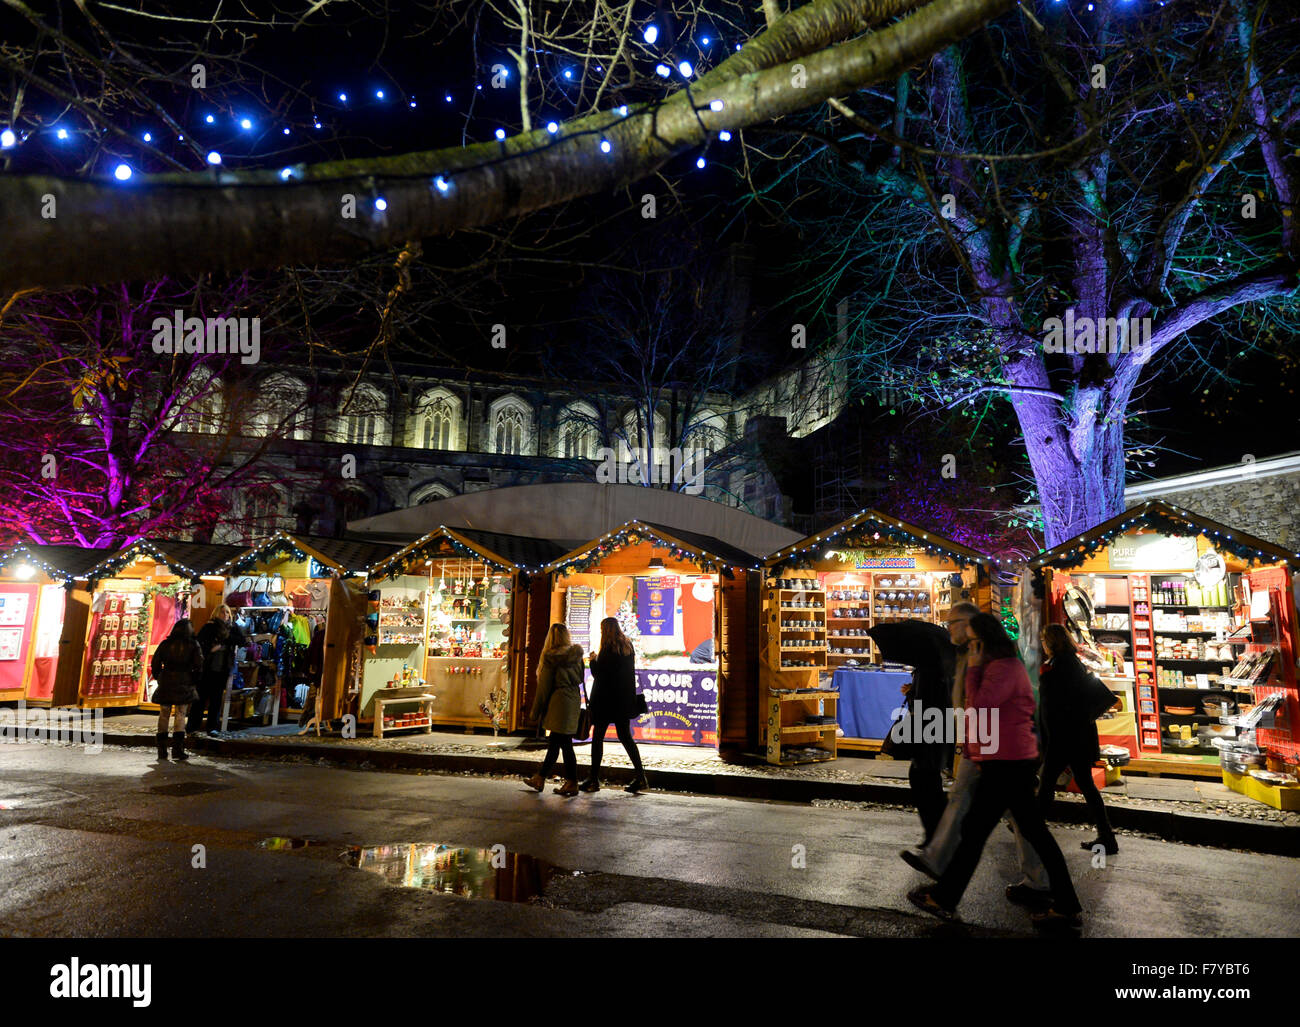 Weihnachtsmarkt Winchester, Hampshire, UK. Stände der jährliche Weihnachtsmarkt Leuchten auf dem Gelände der Winchester Cathedral: 2 Stockfoto